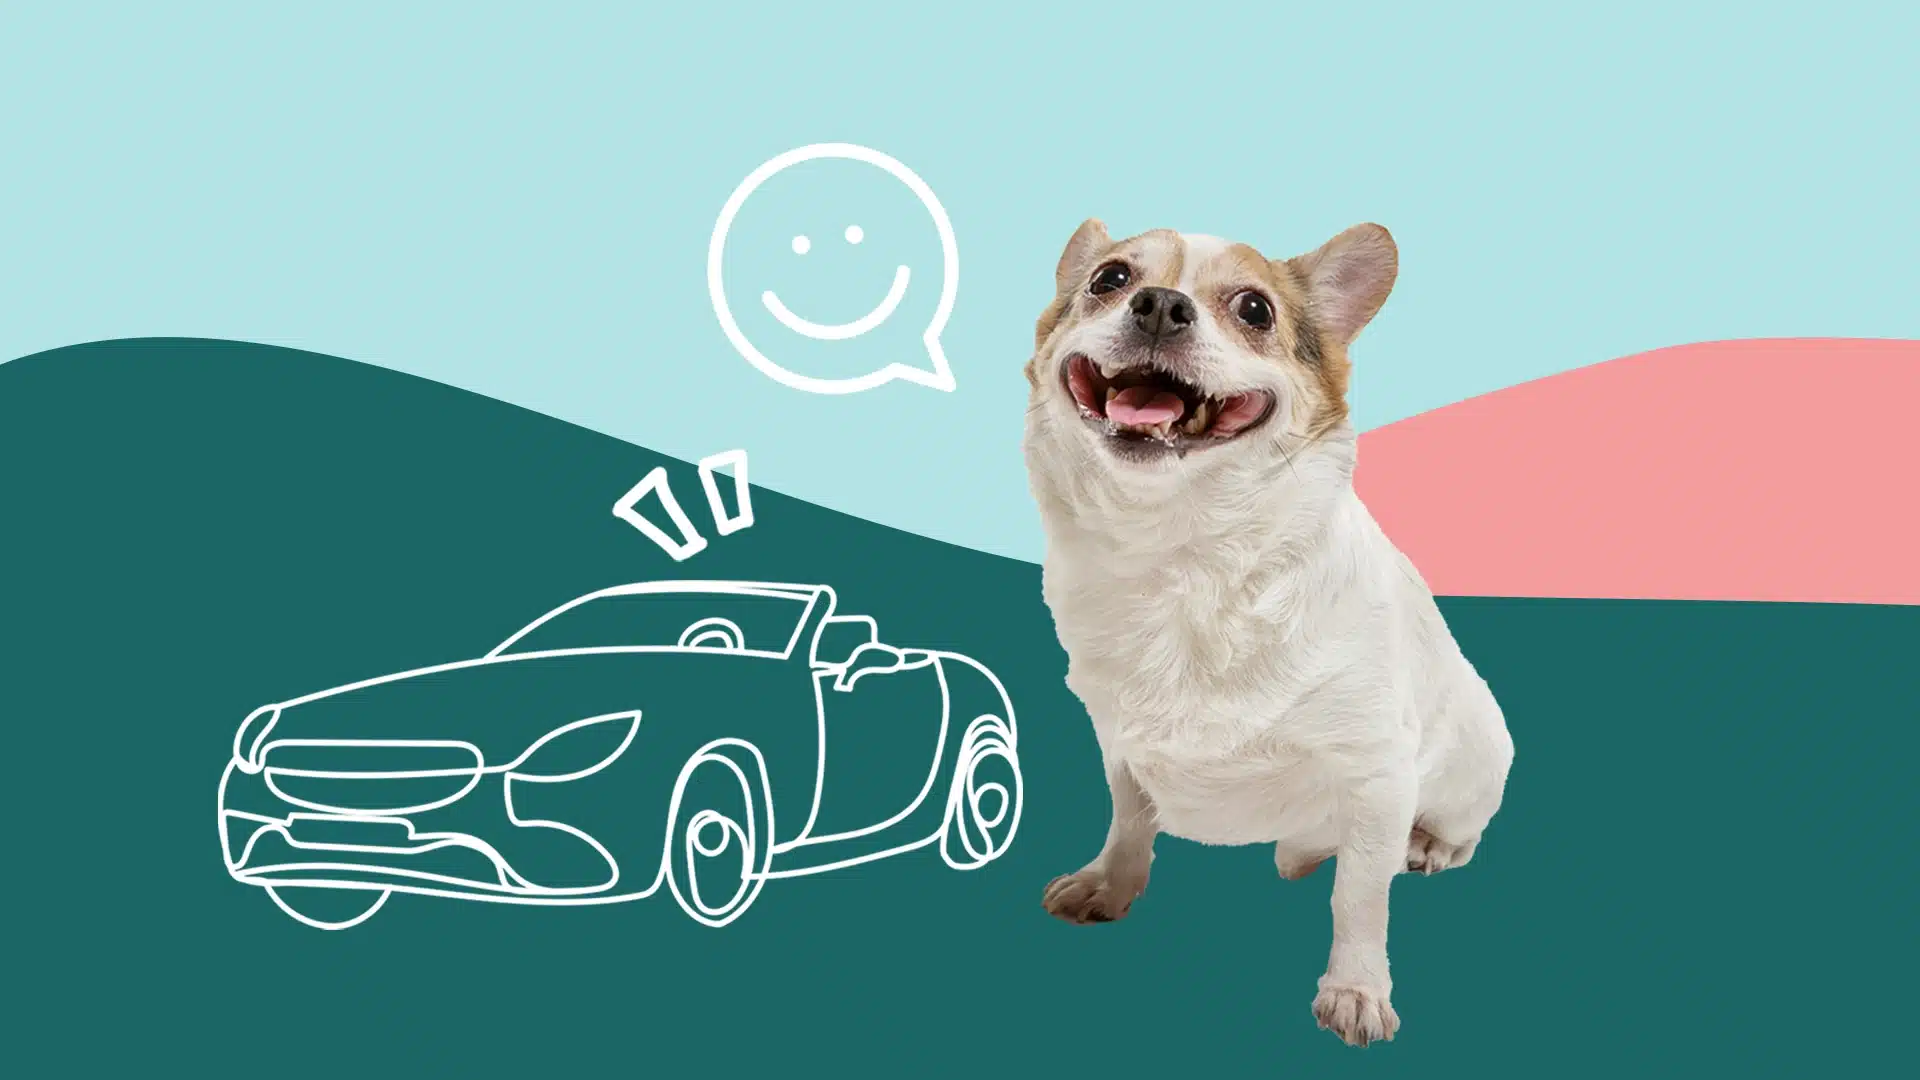 Comment voyager en voiture avec un chien? - Le Parisien